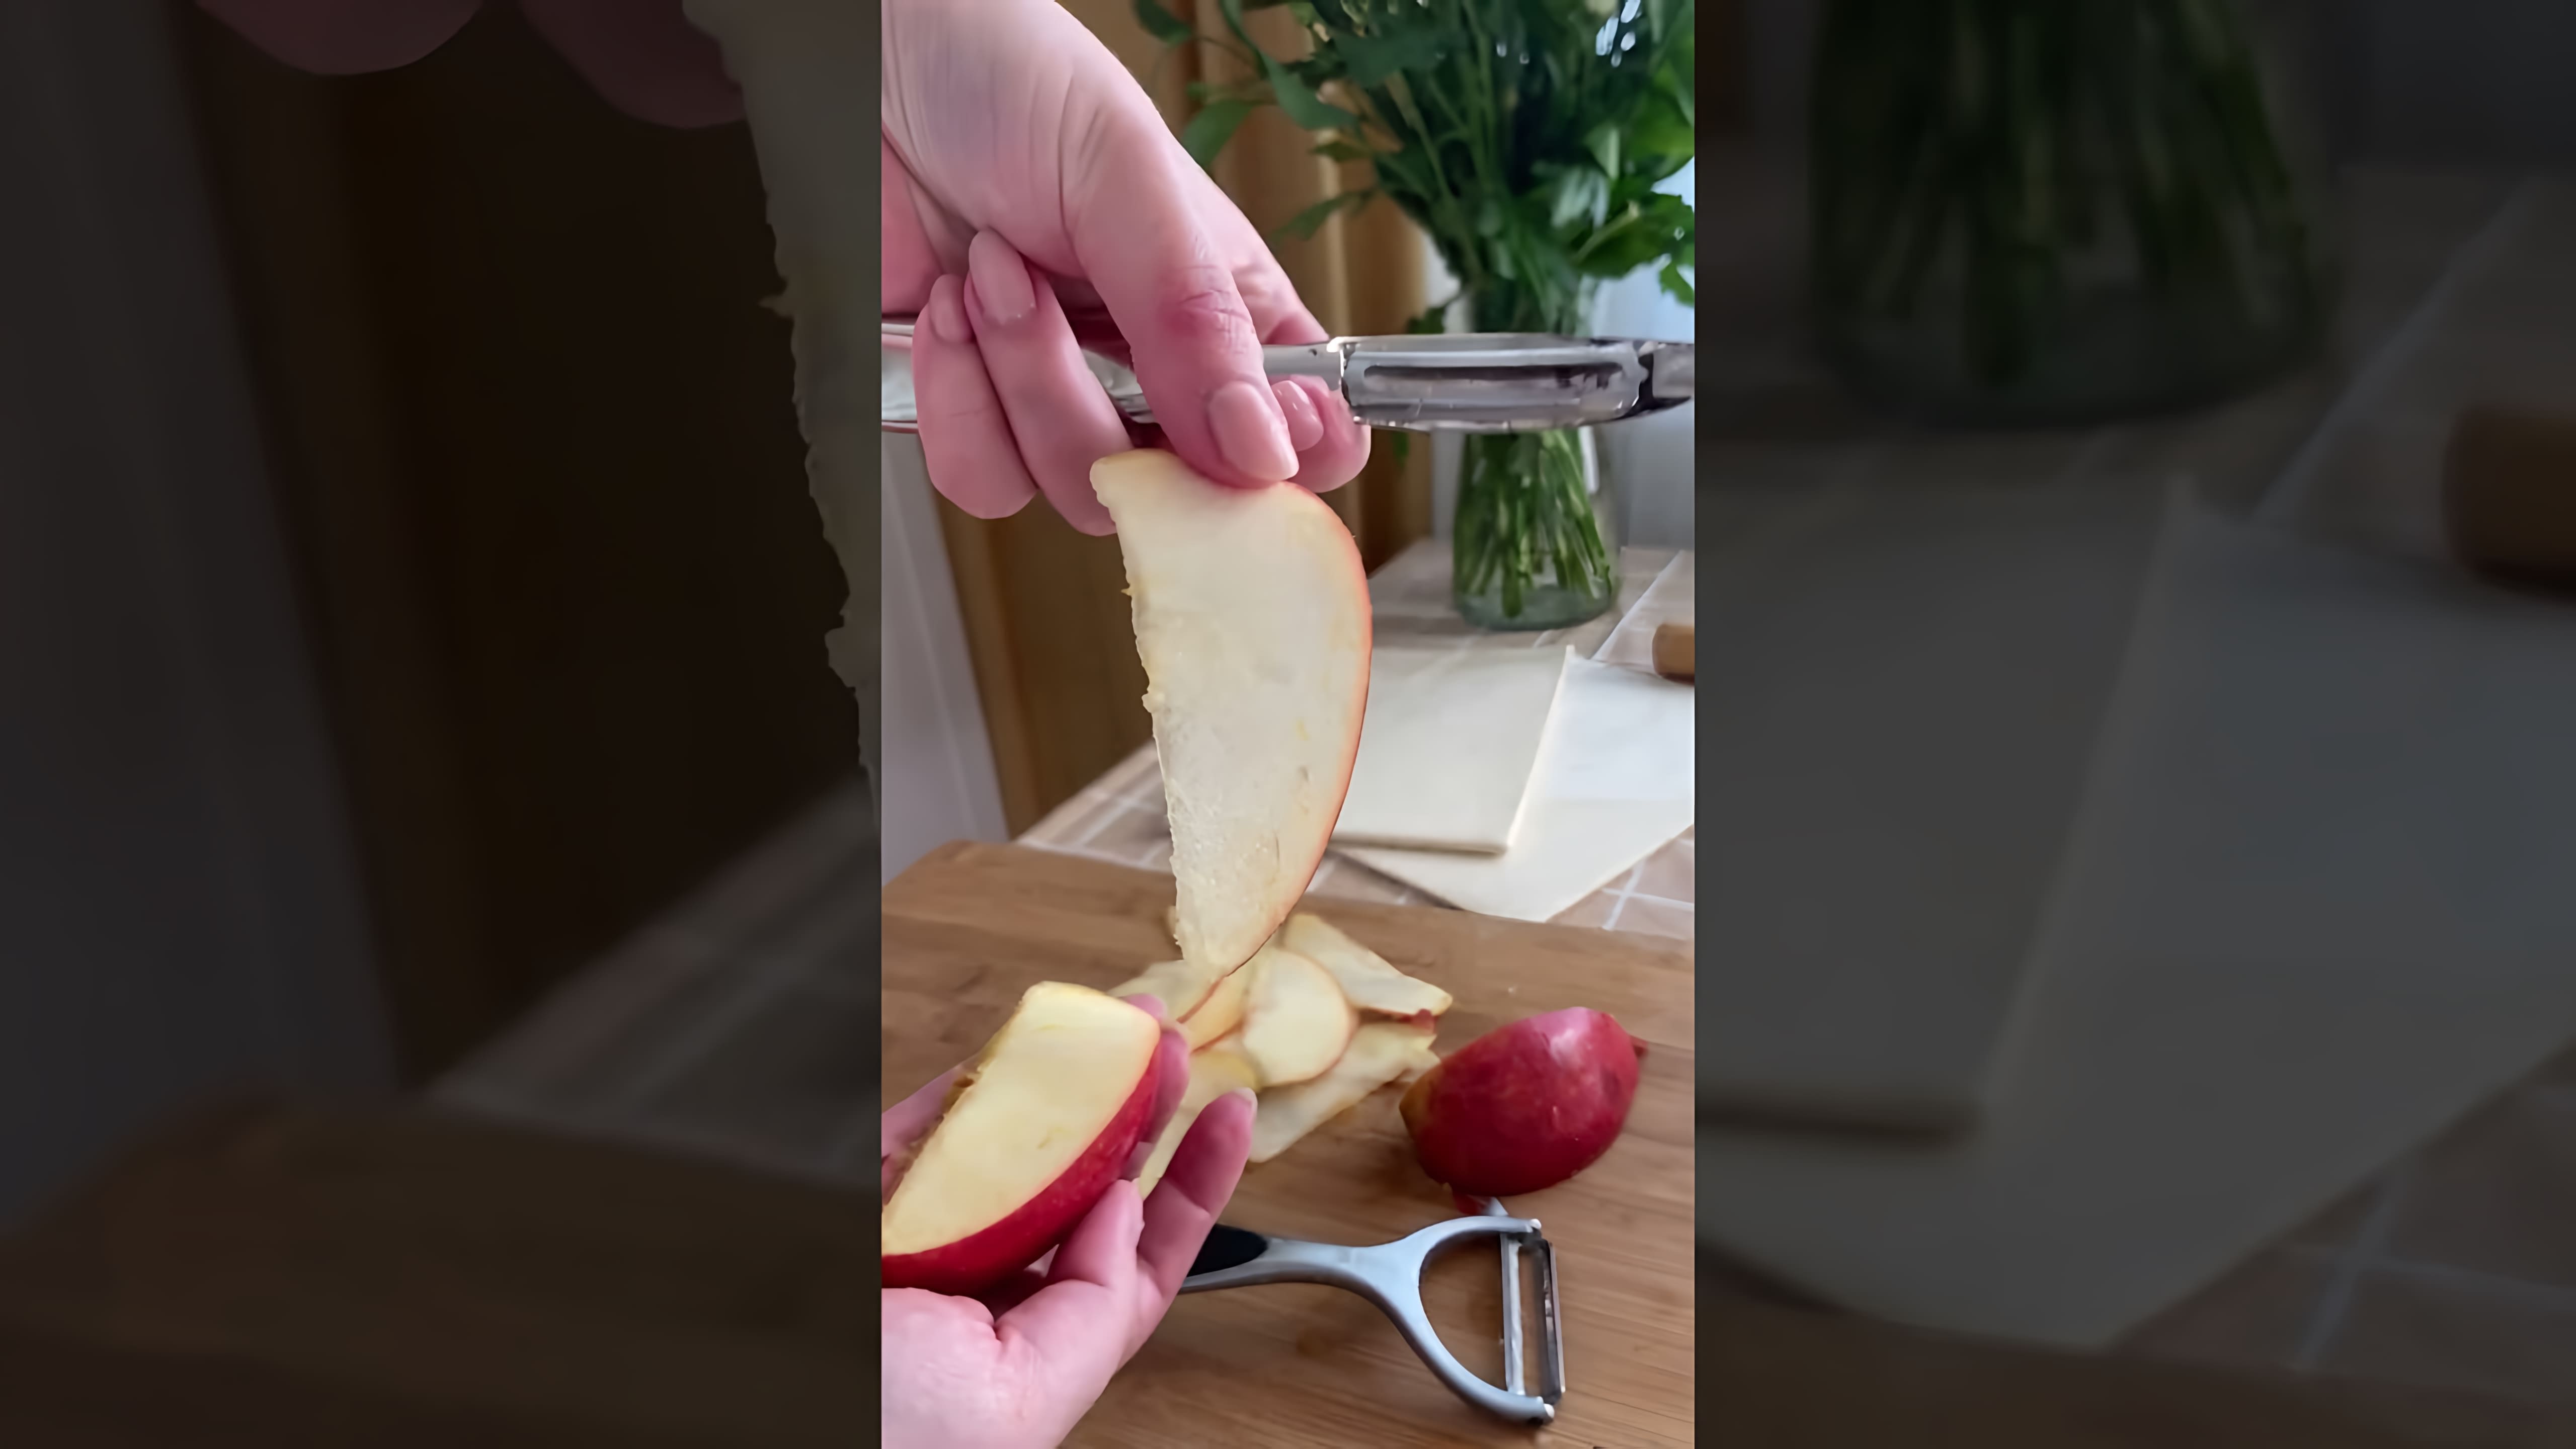 В этом видео демонстрируется рецепт приготовления розочек из яблок и слоеного теста с корицей